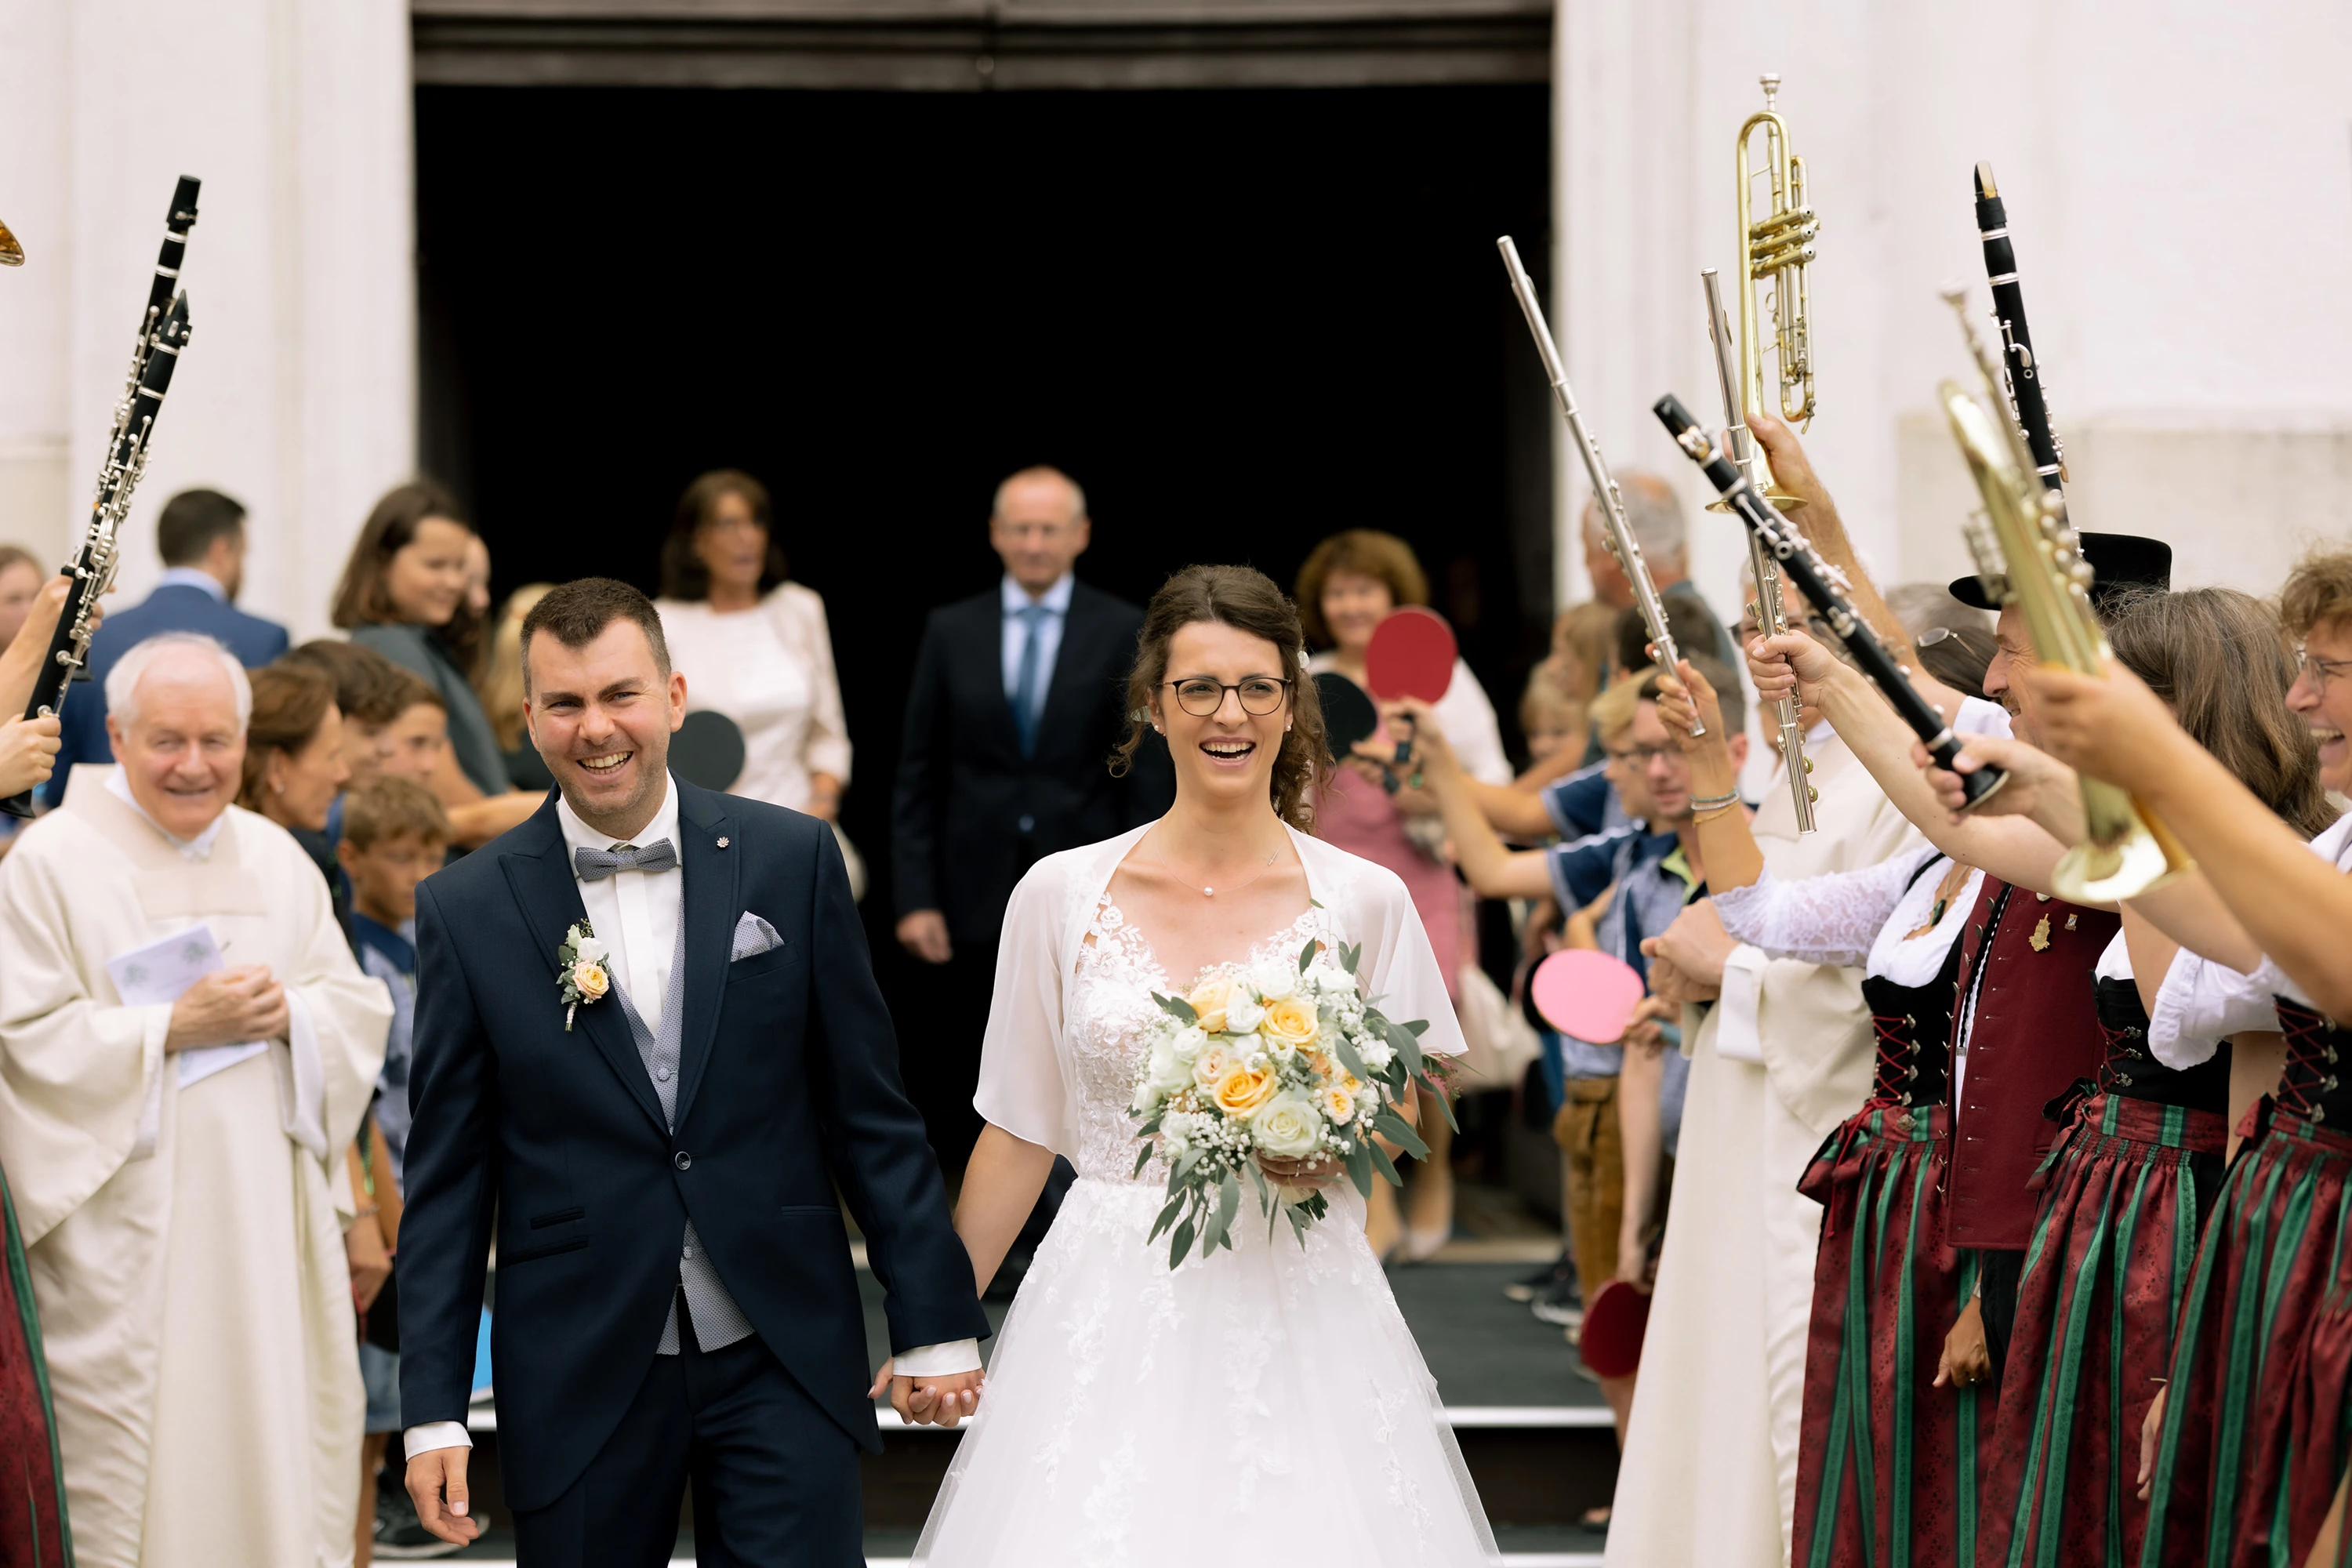 Das Brautpaar tritt aus der Kirche und wird von Musikanten mit in die Höhe gehaltenen Instrumenten begrüßt.